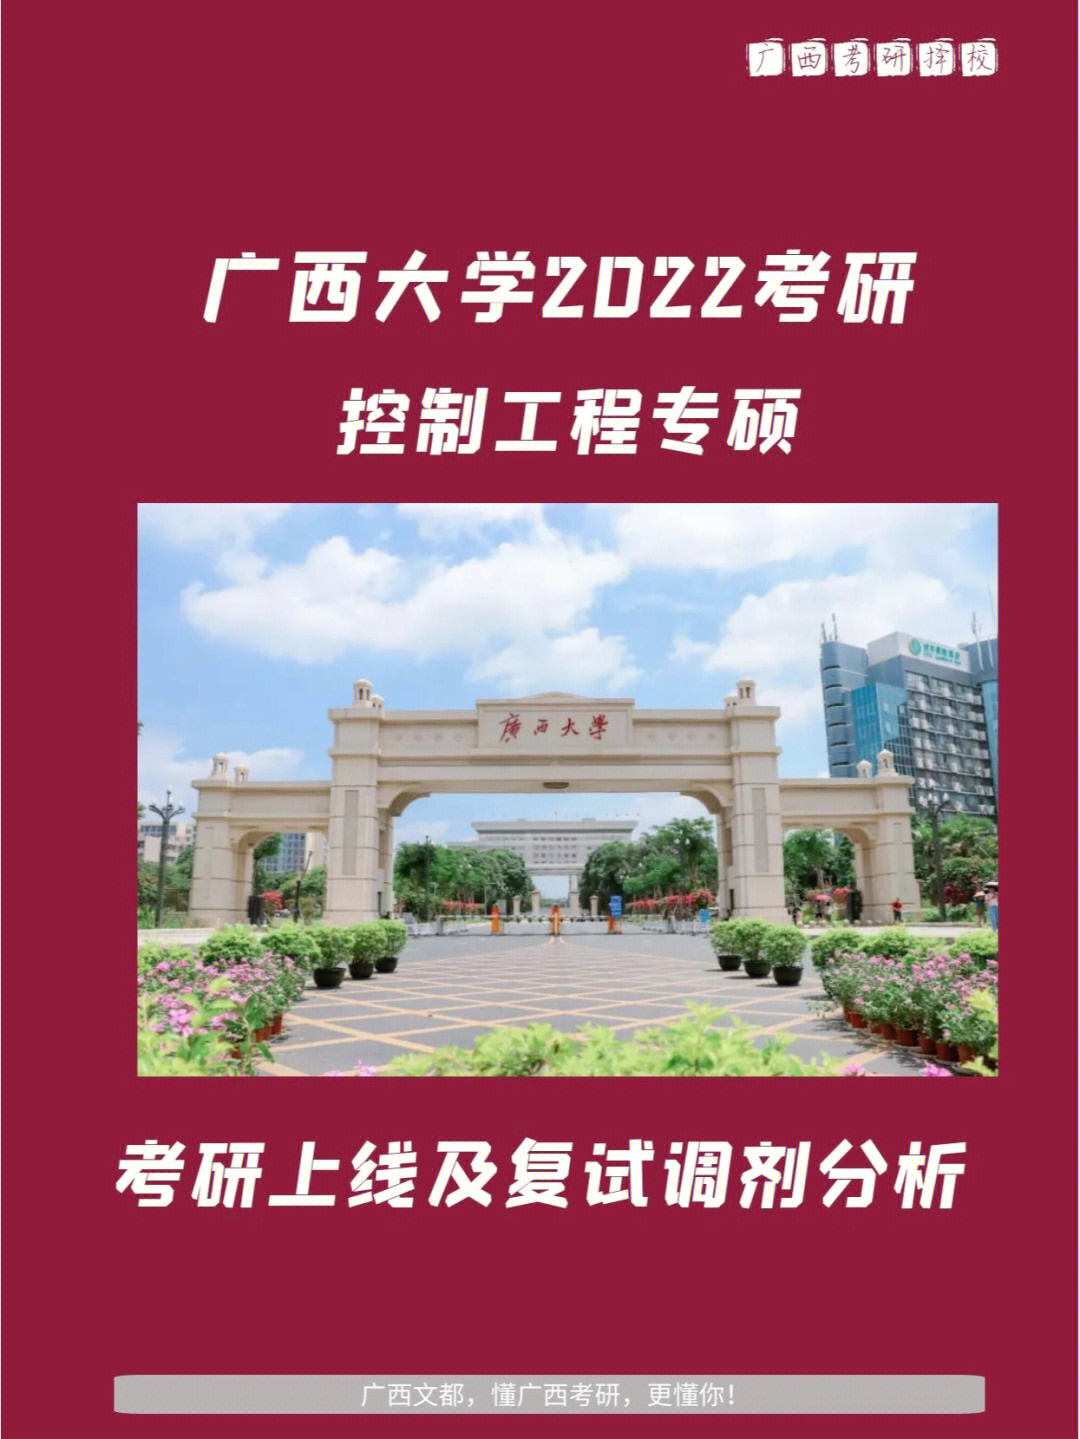 今天将为大家介绍的是——广西大学电气工程学院2022考研(085406)控制